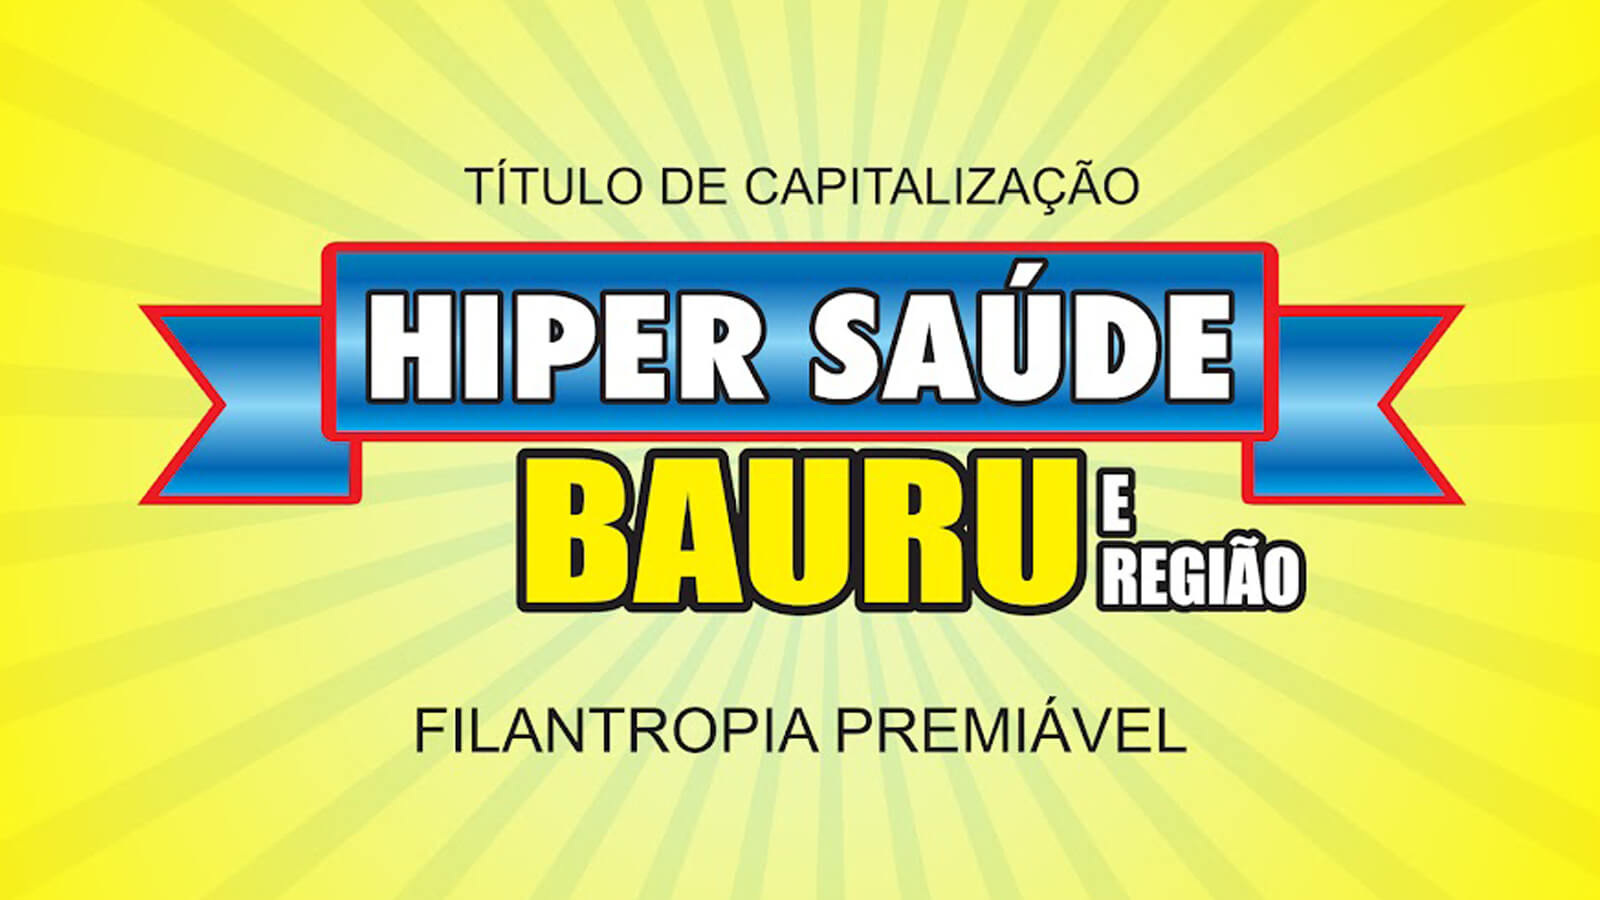 Resultado do Hiper Saúde Bauru, domingo, 02/10/22; confira os ganhadores